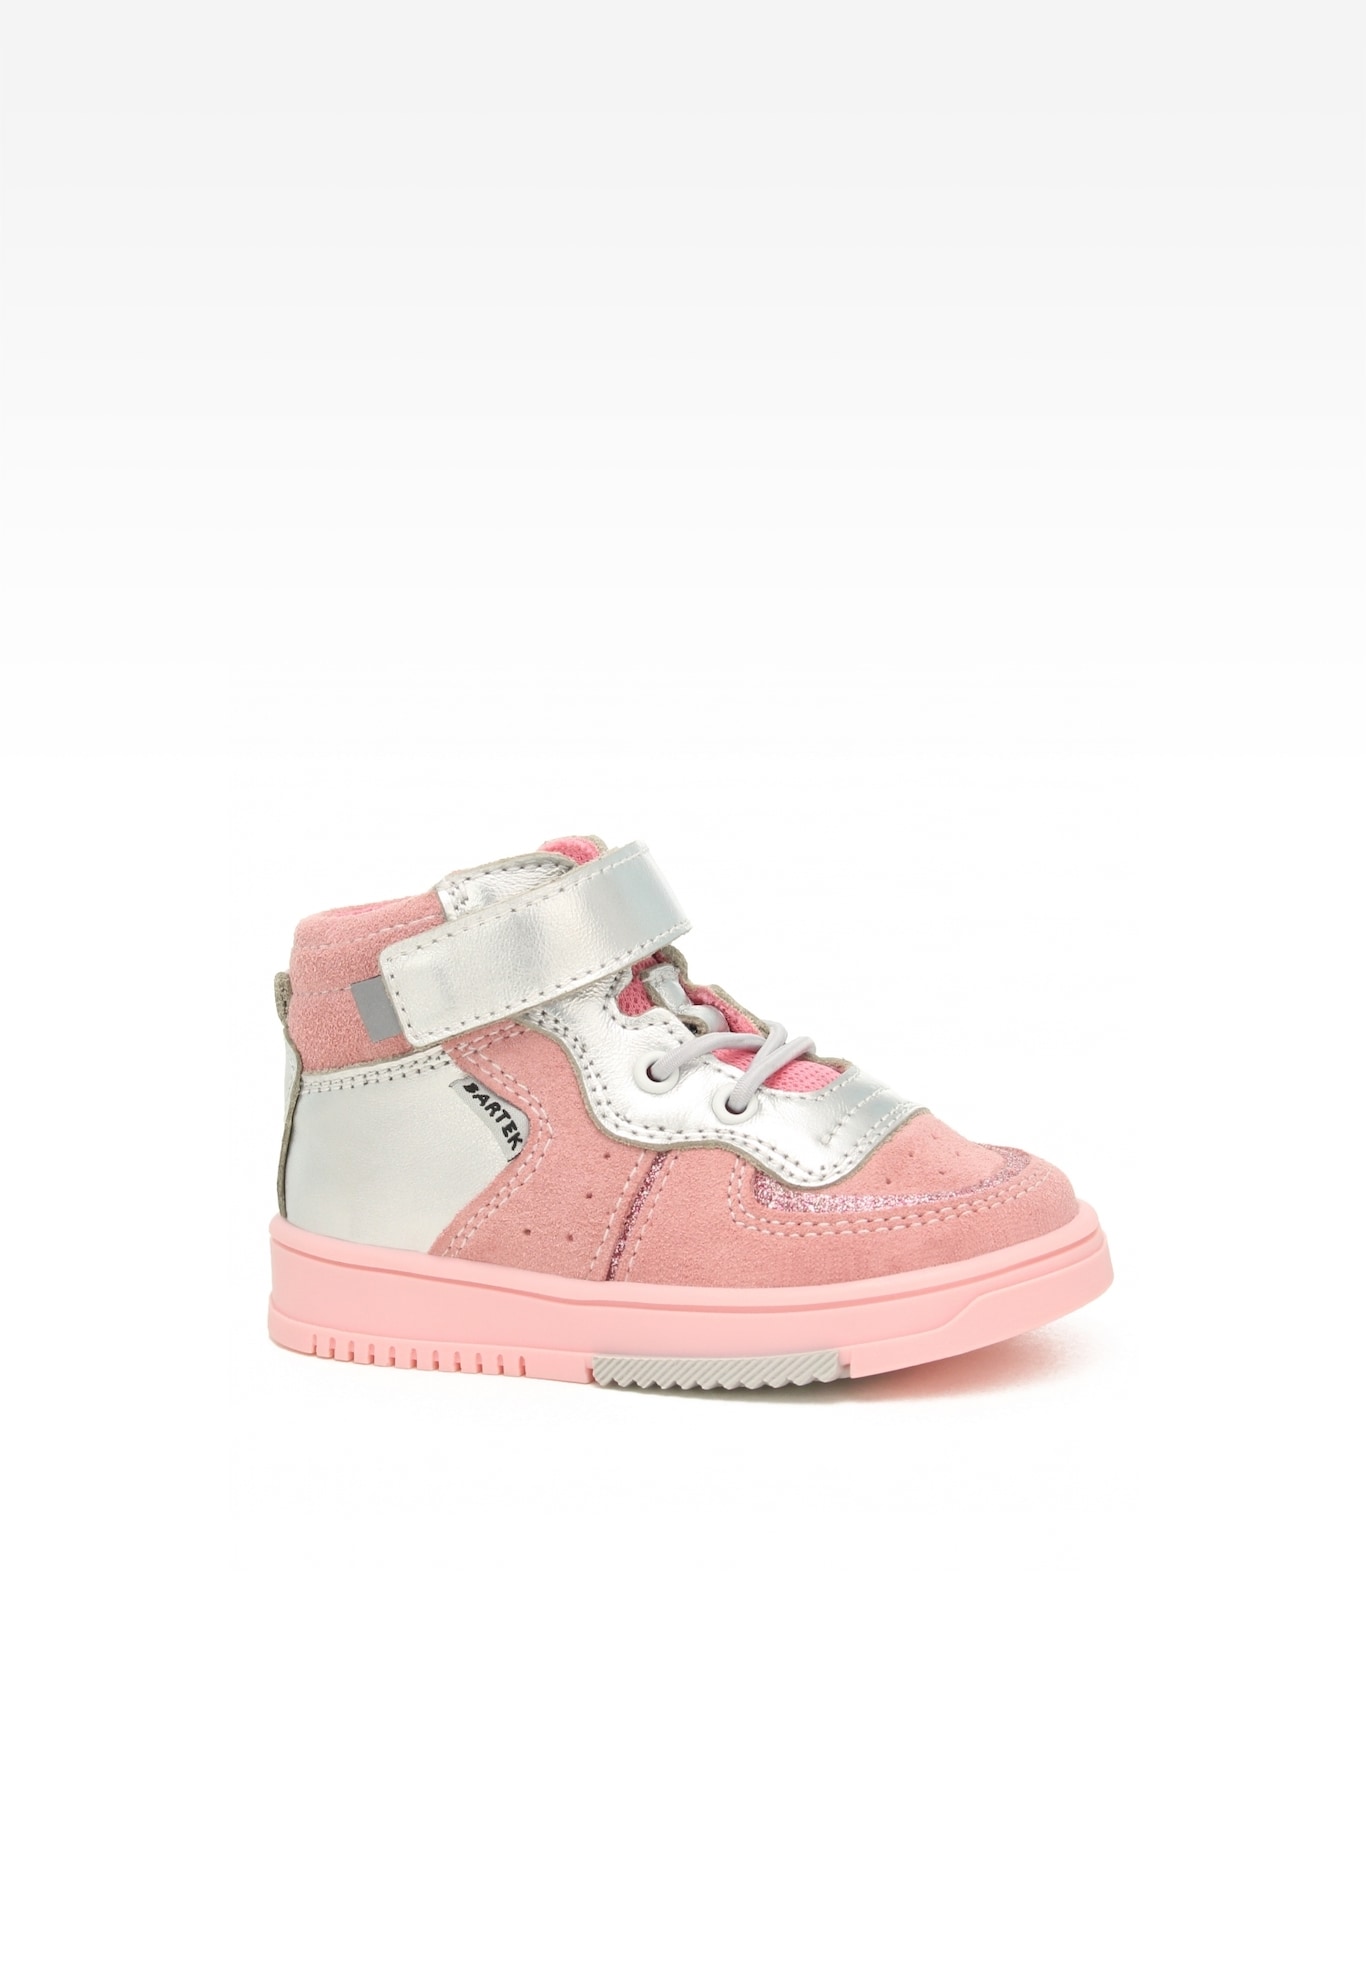 Sneakers BARTEK 11583003, dla dziewcząt, różowo-srebrny